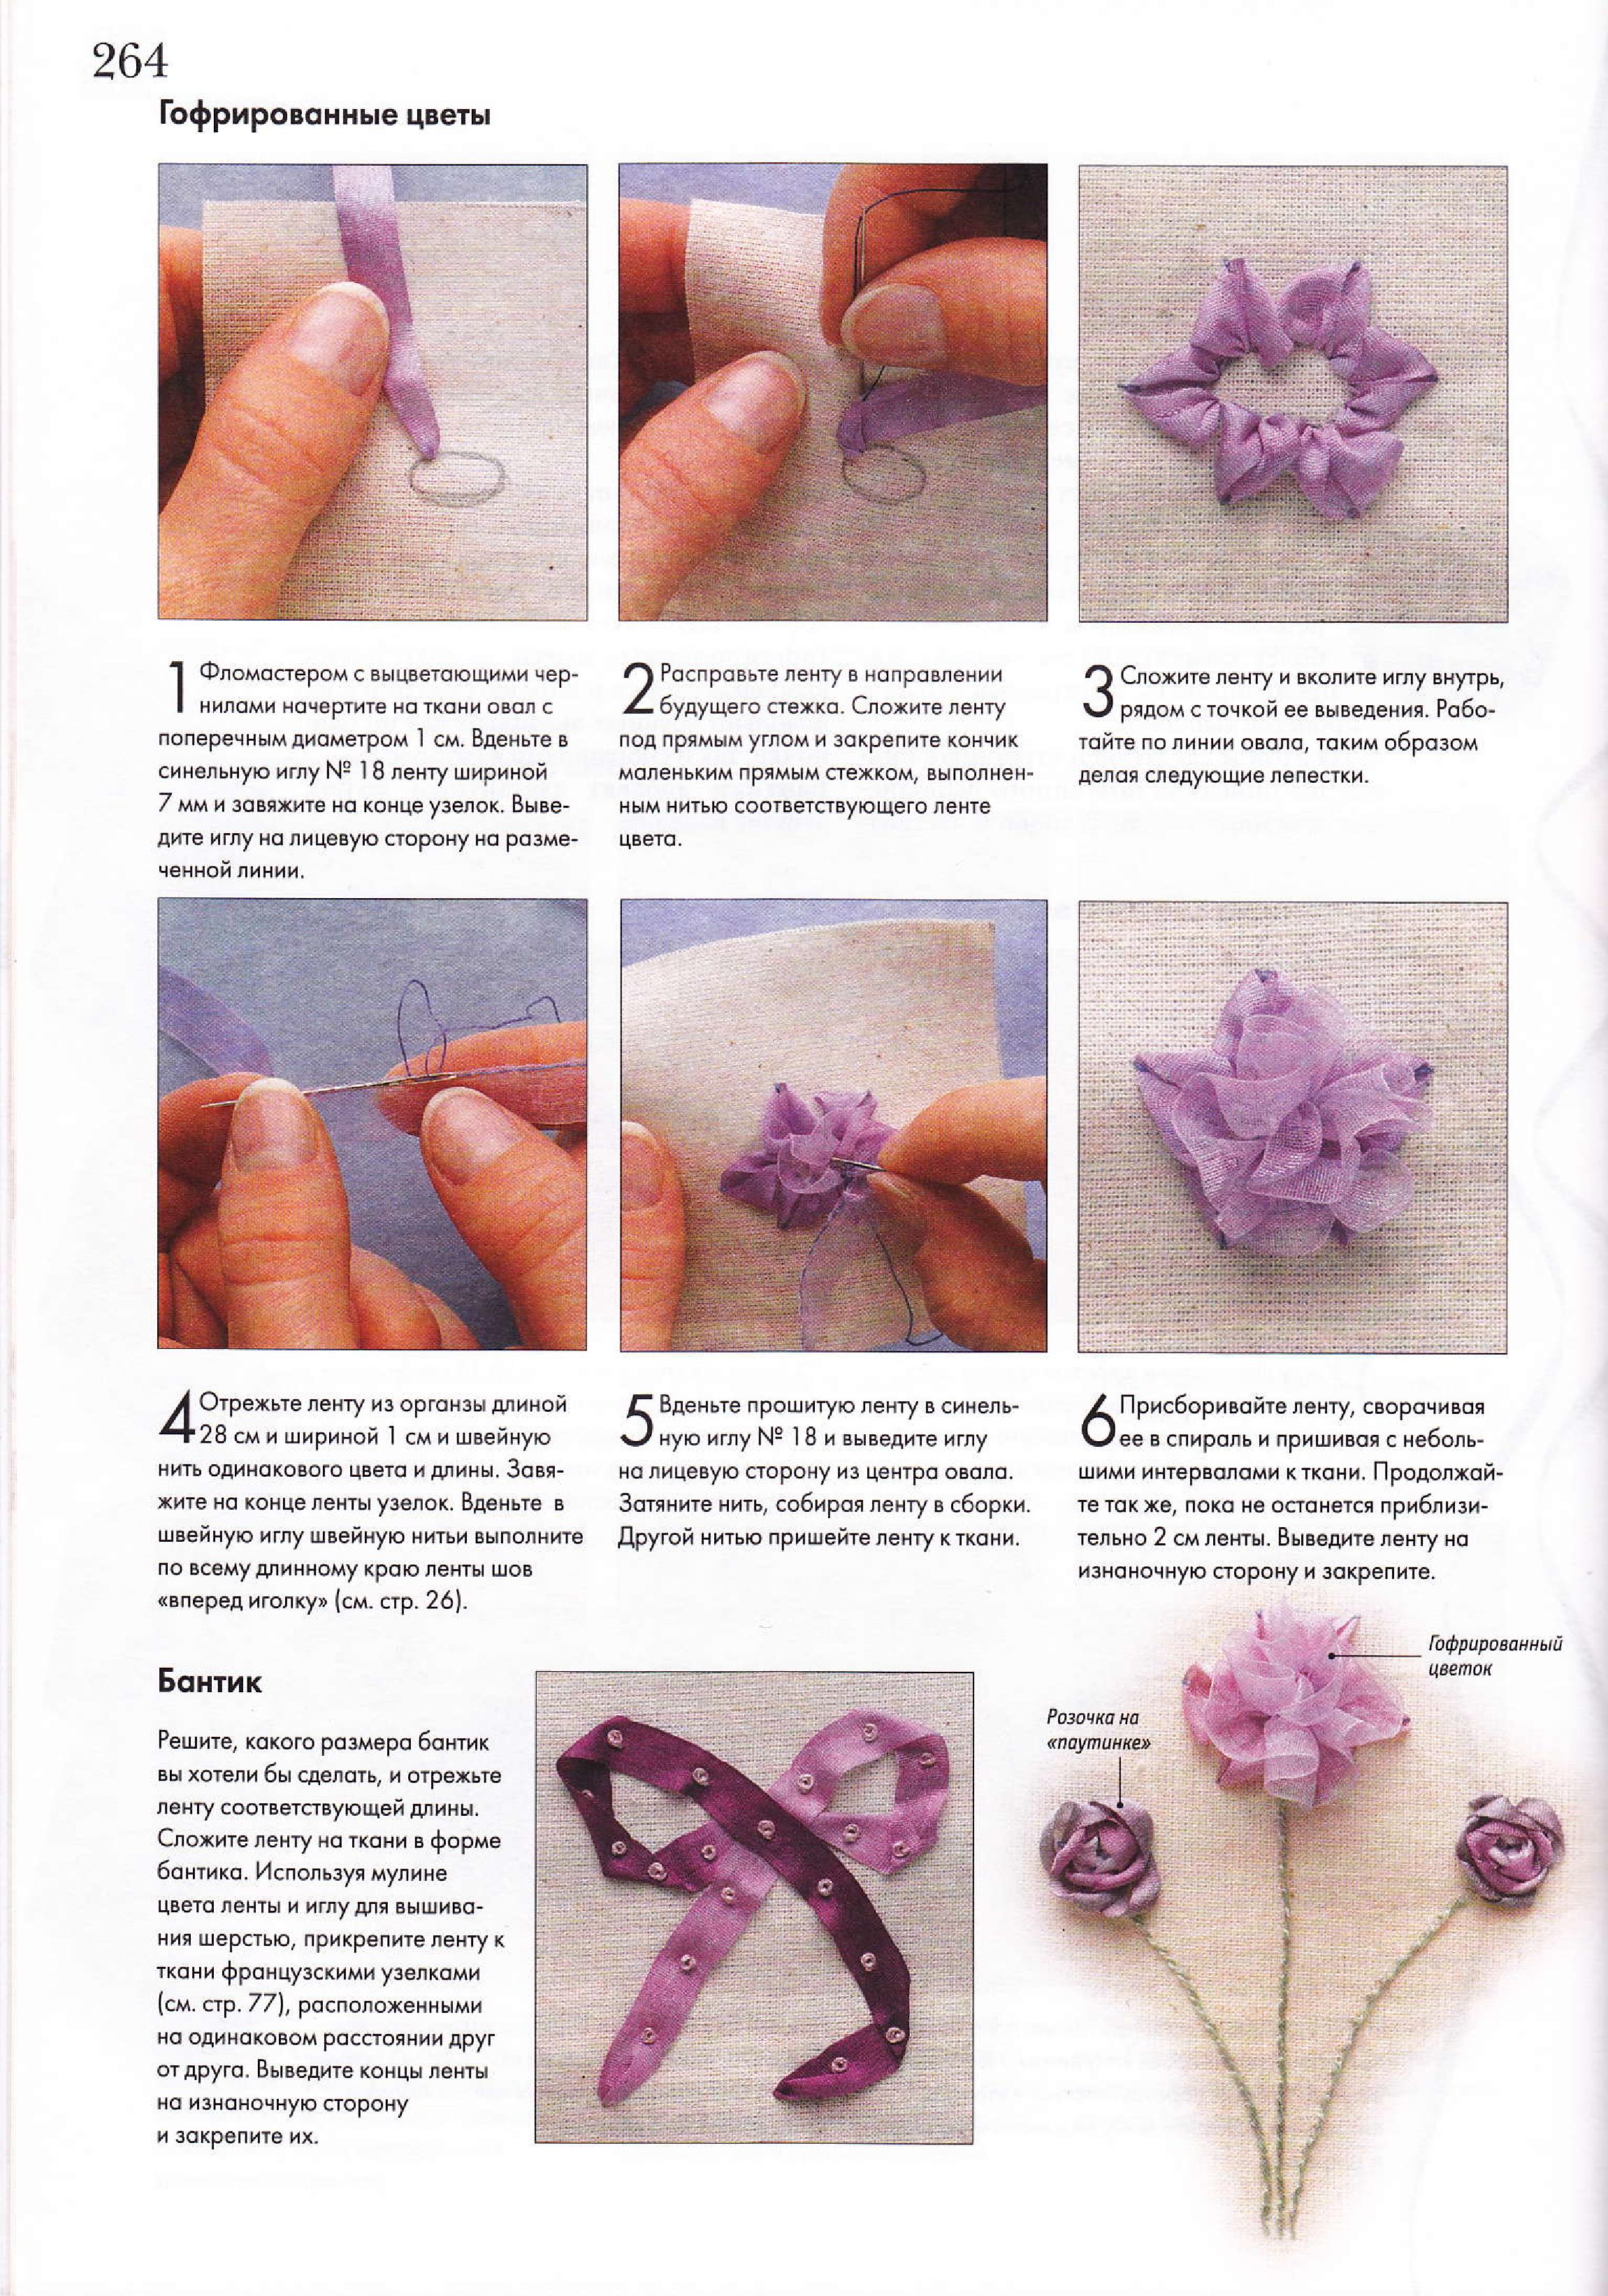 Как делать цветы и красивую вышивку из атласных лент: мастер-классы с фото и видео